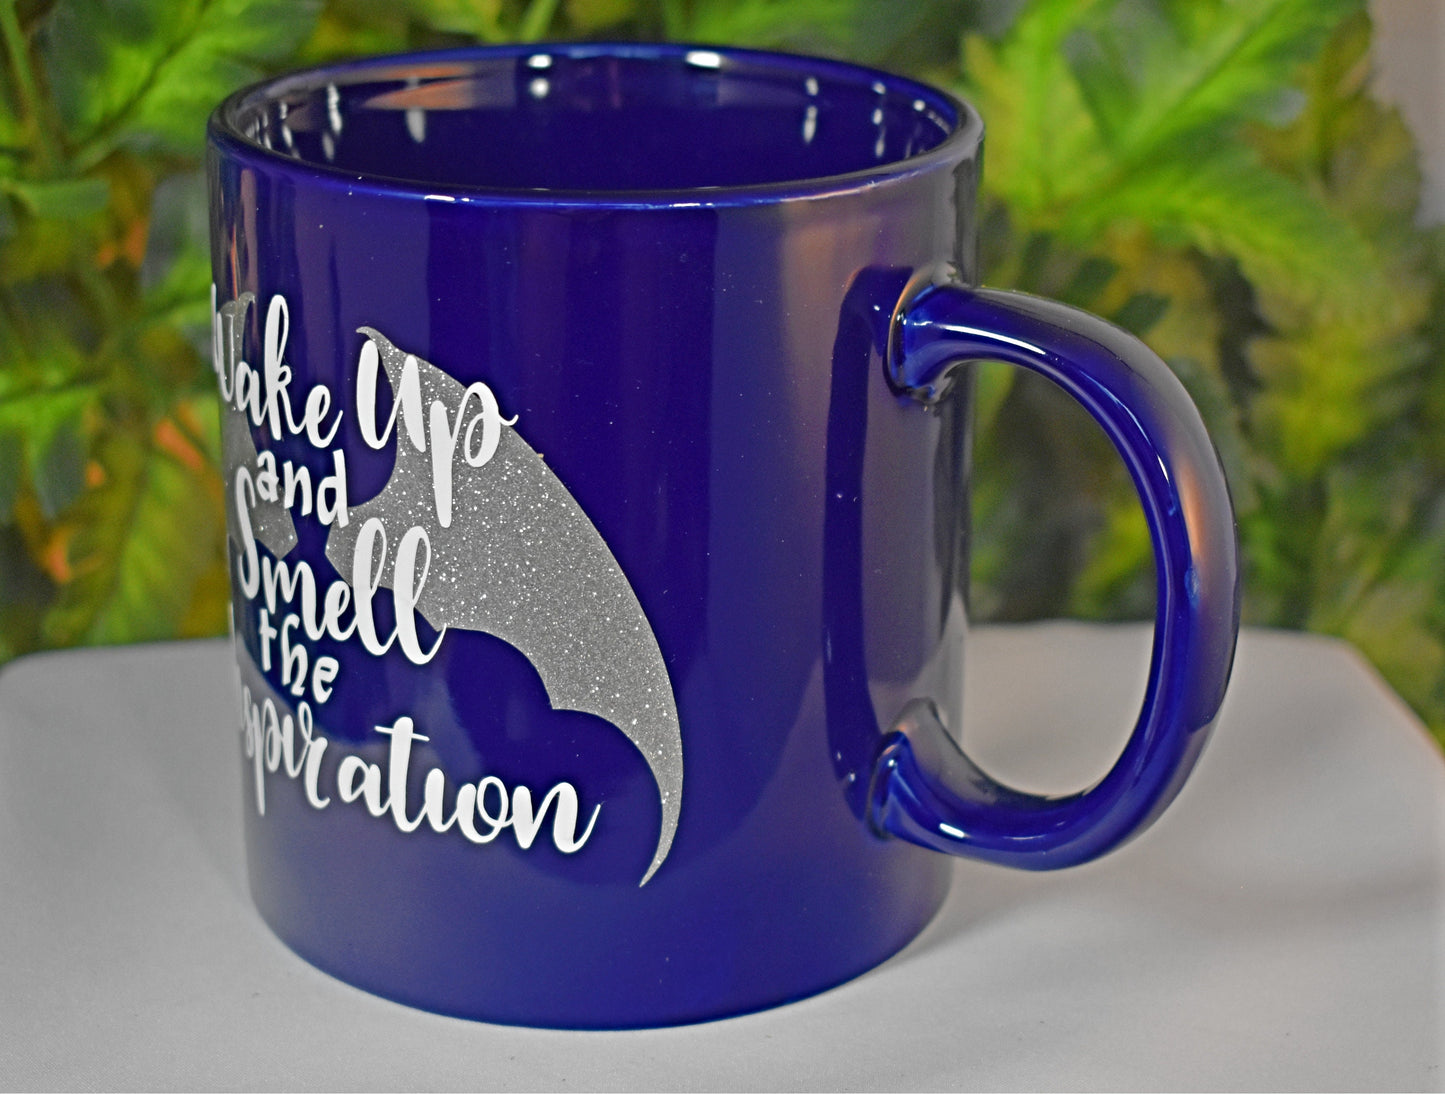 Blue 20oz "Inspiration" Coffee Mug - 9-023